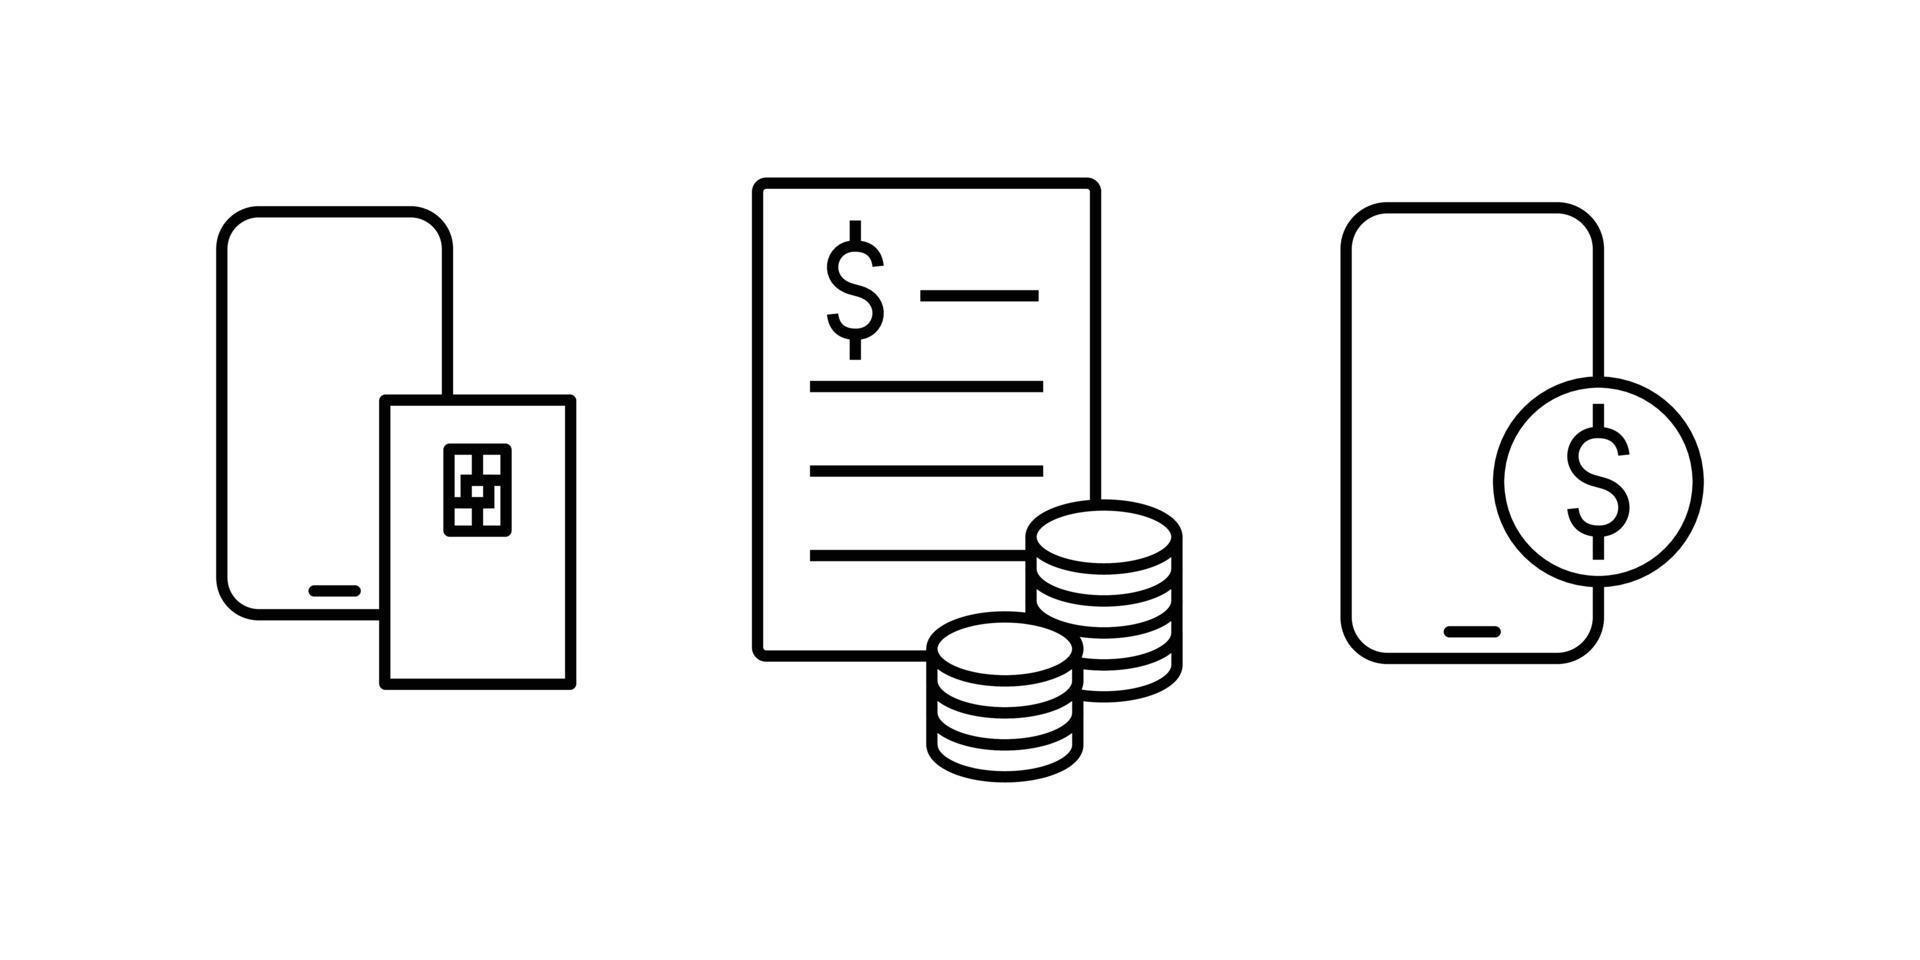 set di illustrazione creativa dell'icona modificabile relativa a cose finanziarie. contabilità. tratto vettoriale dell'elemento adatto per la progettazione dell'interfaccia utente di applicazioni finanziarie o economiche.